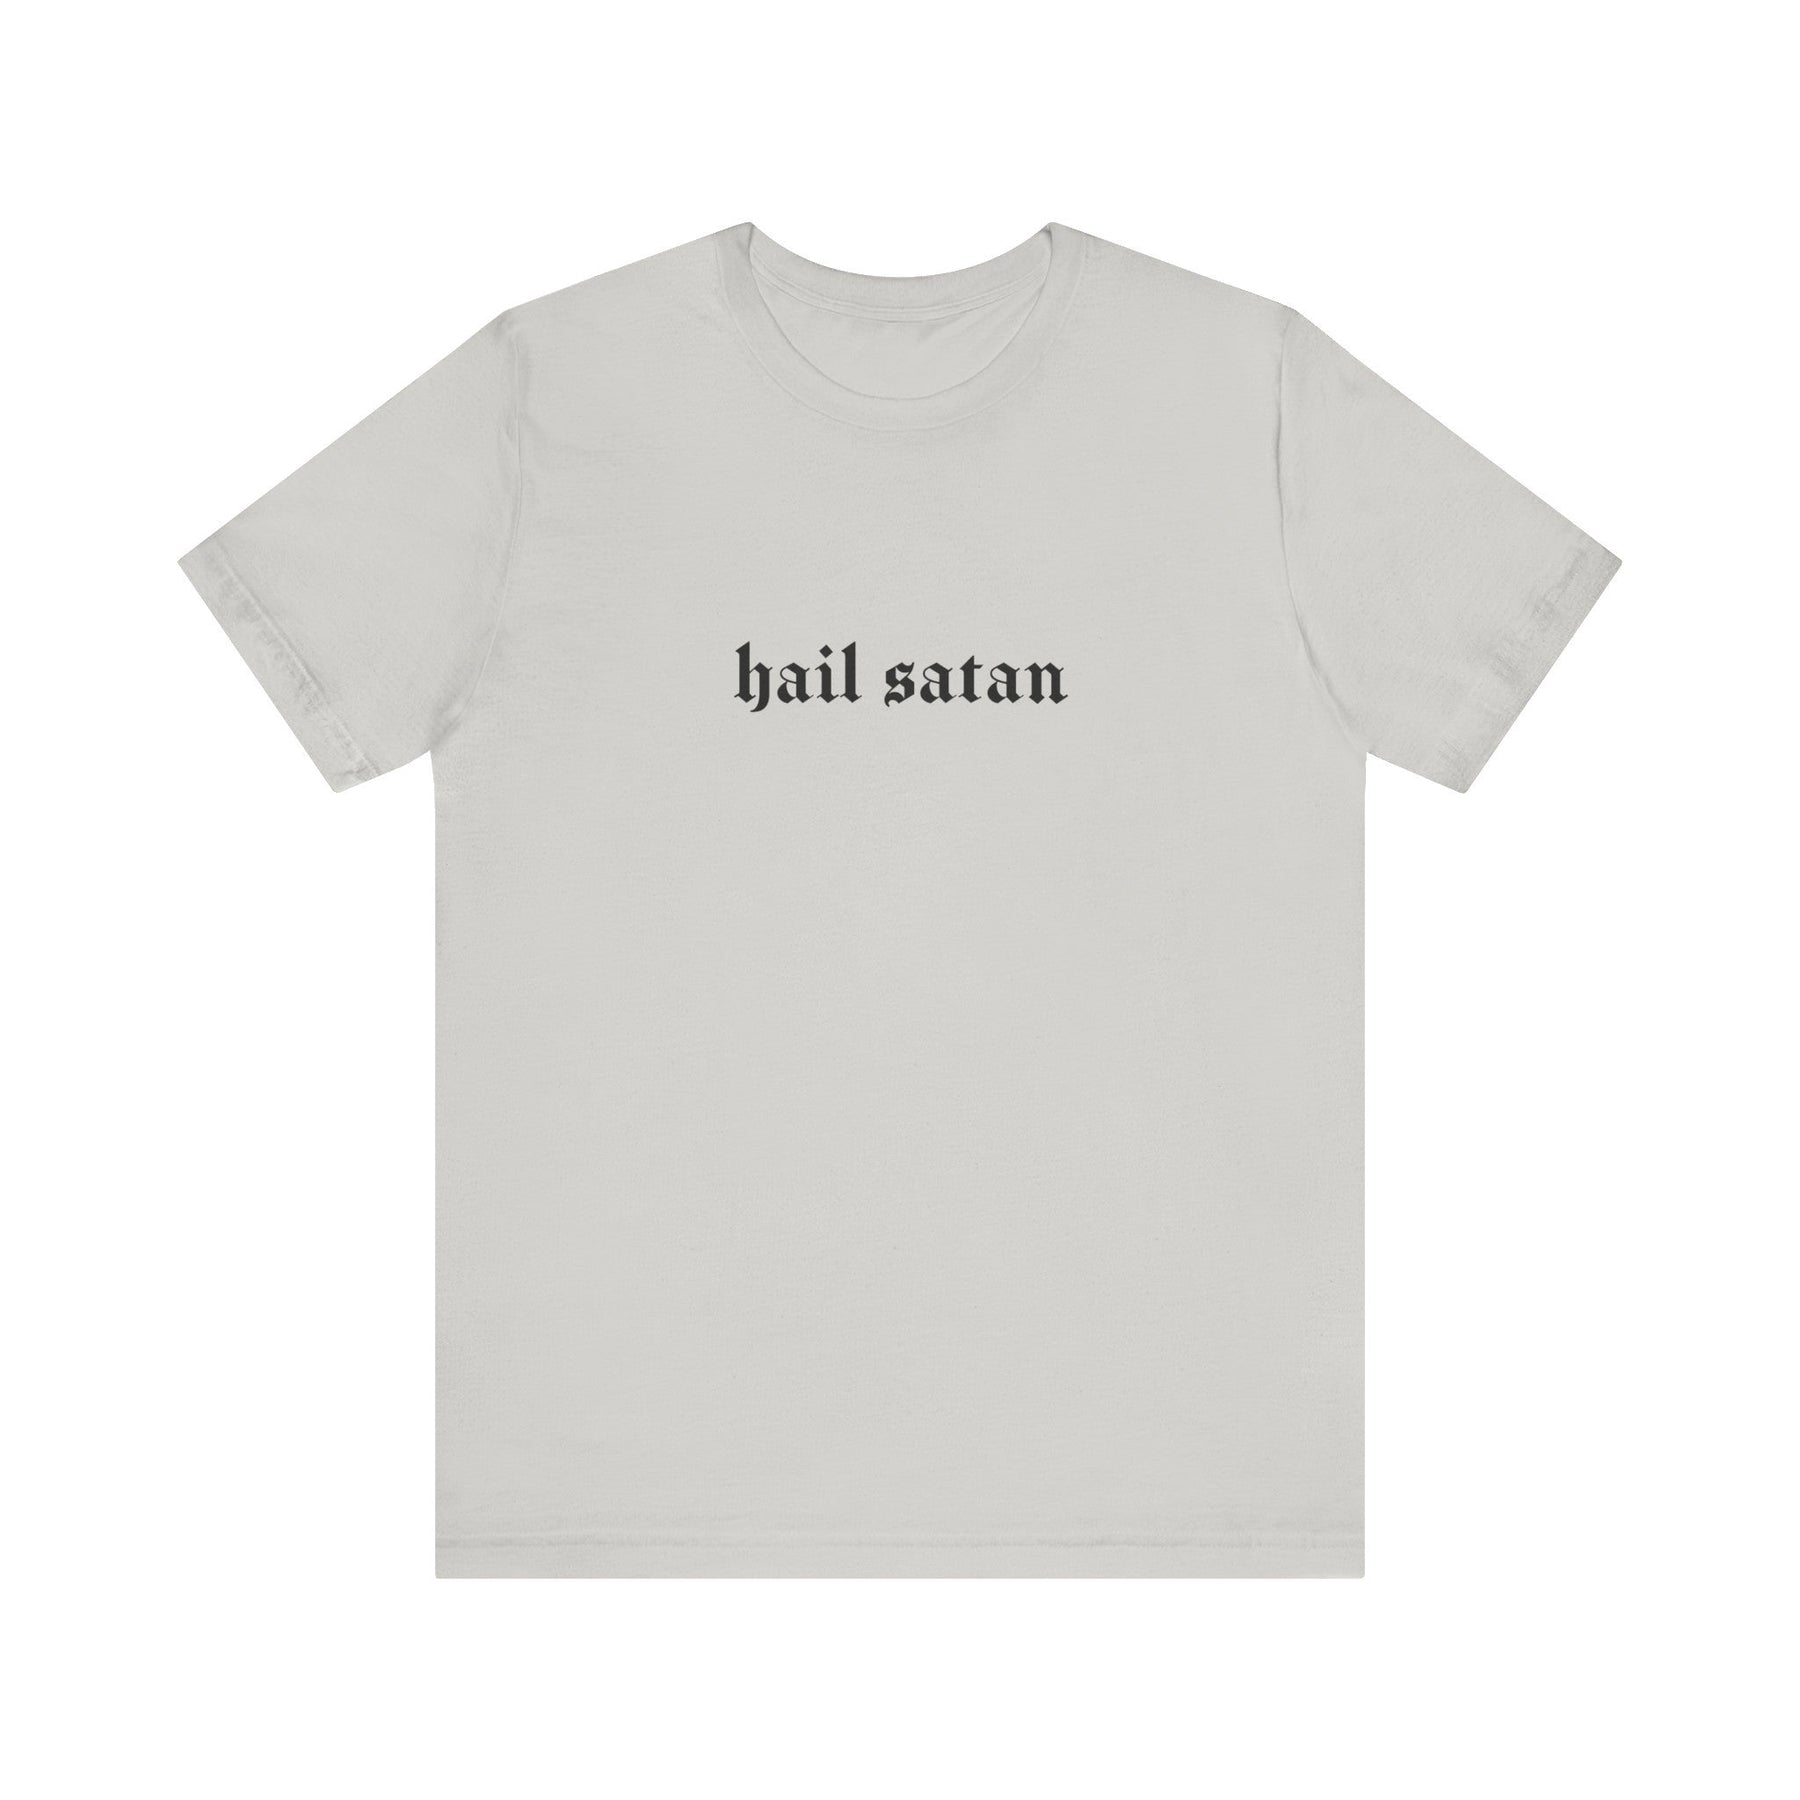 Hail Satan Gothic T - Shirt - Goth Cloth Co.T - Shirt34282942992181318826